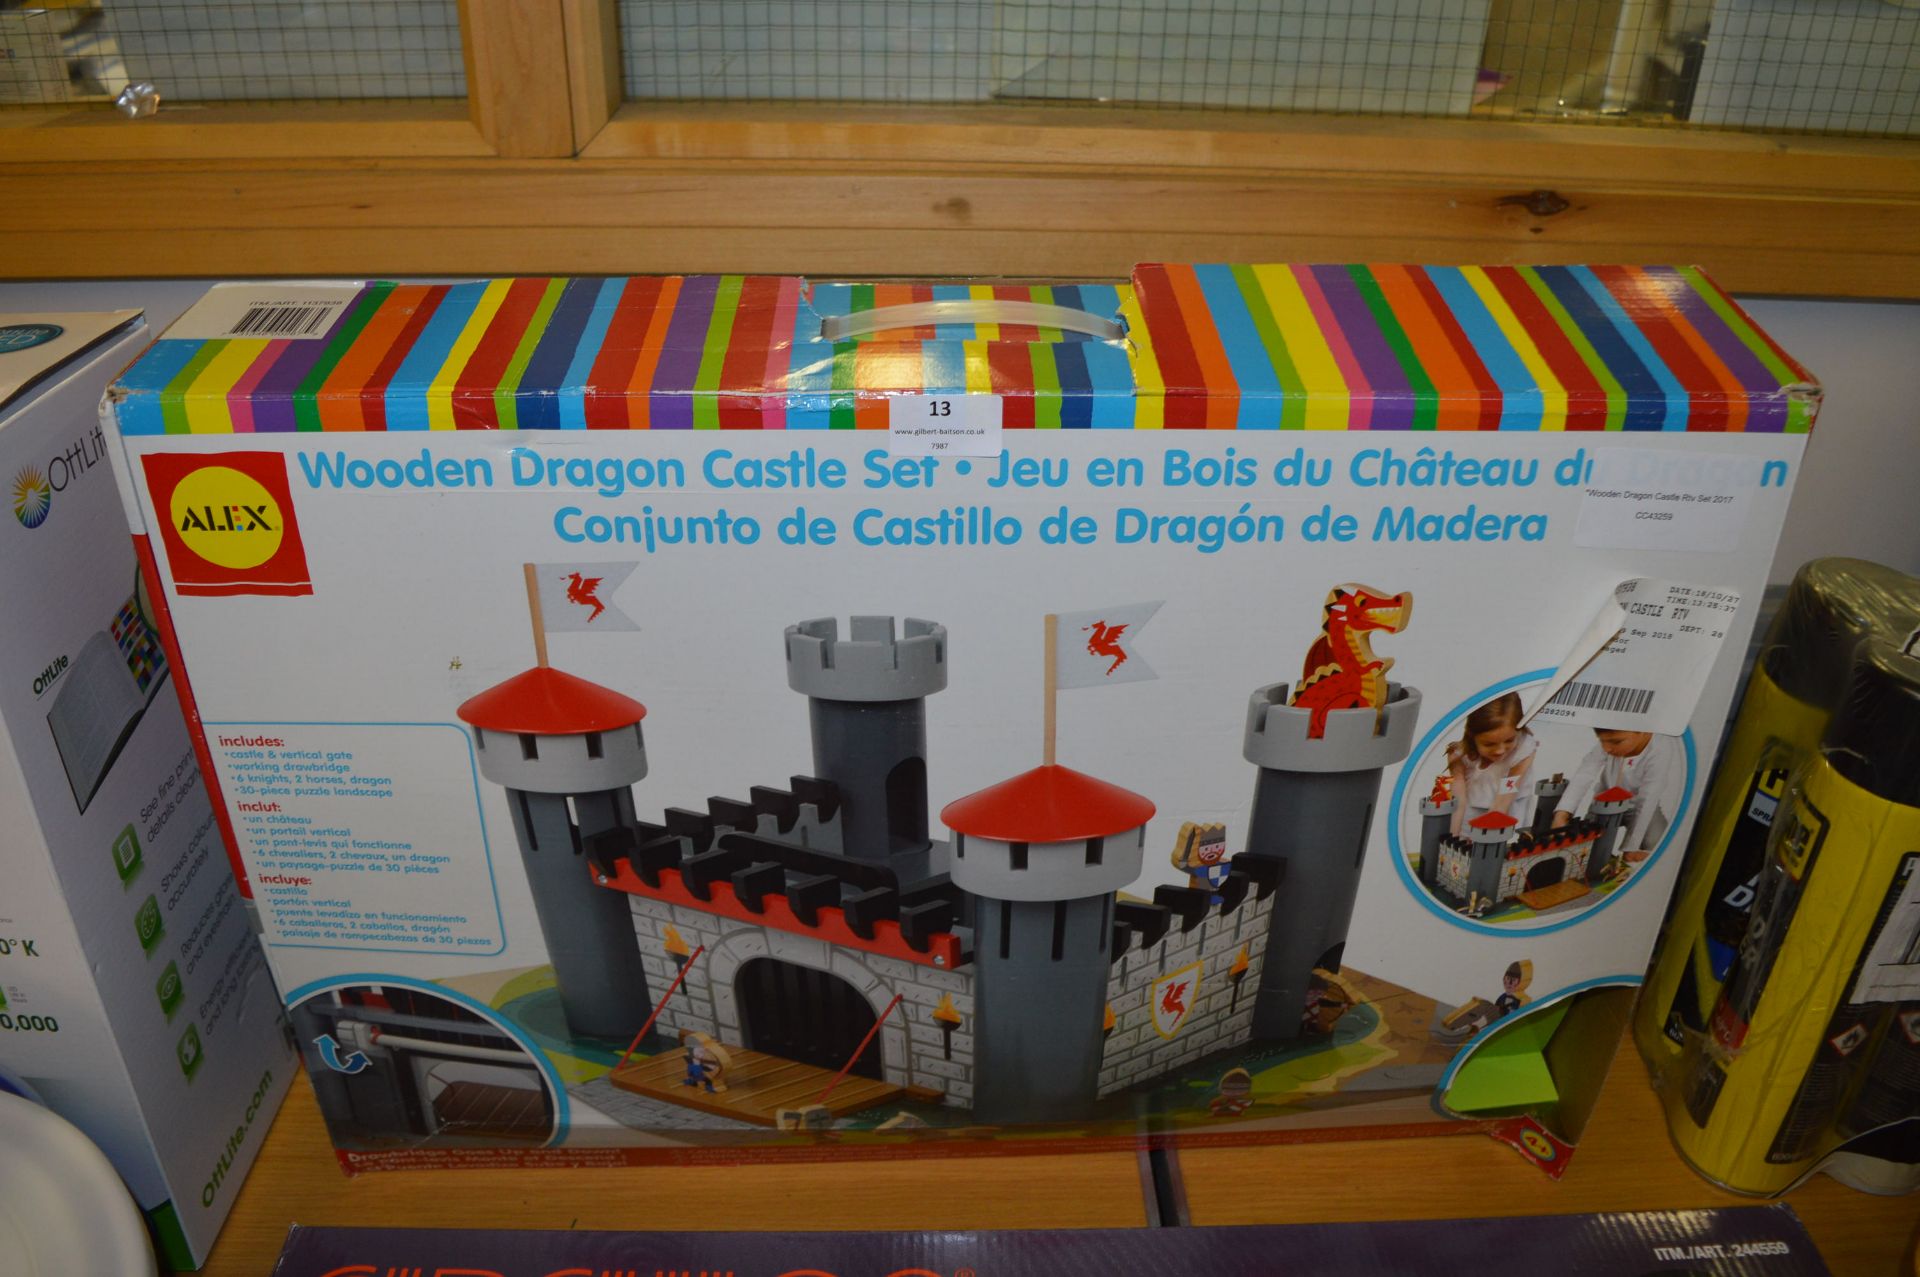 *Wooden Dragon Castle